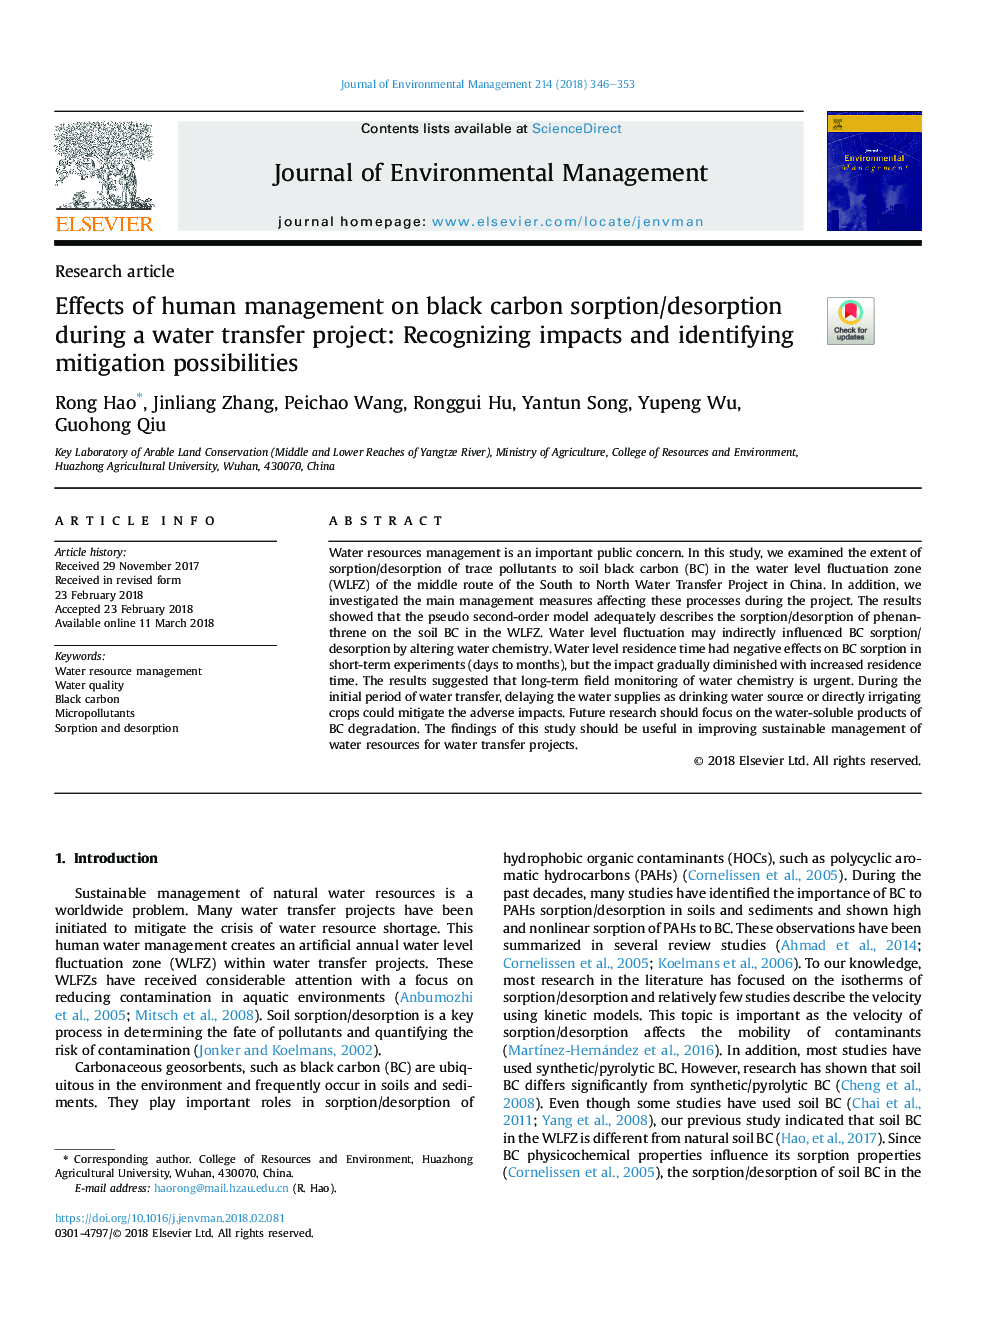 تأثیر مدیریت انسان بر جذب / جذب کربن سیاه در پروژه انتقال آب: شناخت اثرات و شناسایی امکان کاهش 